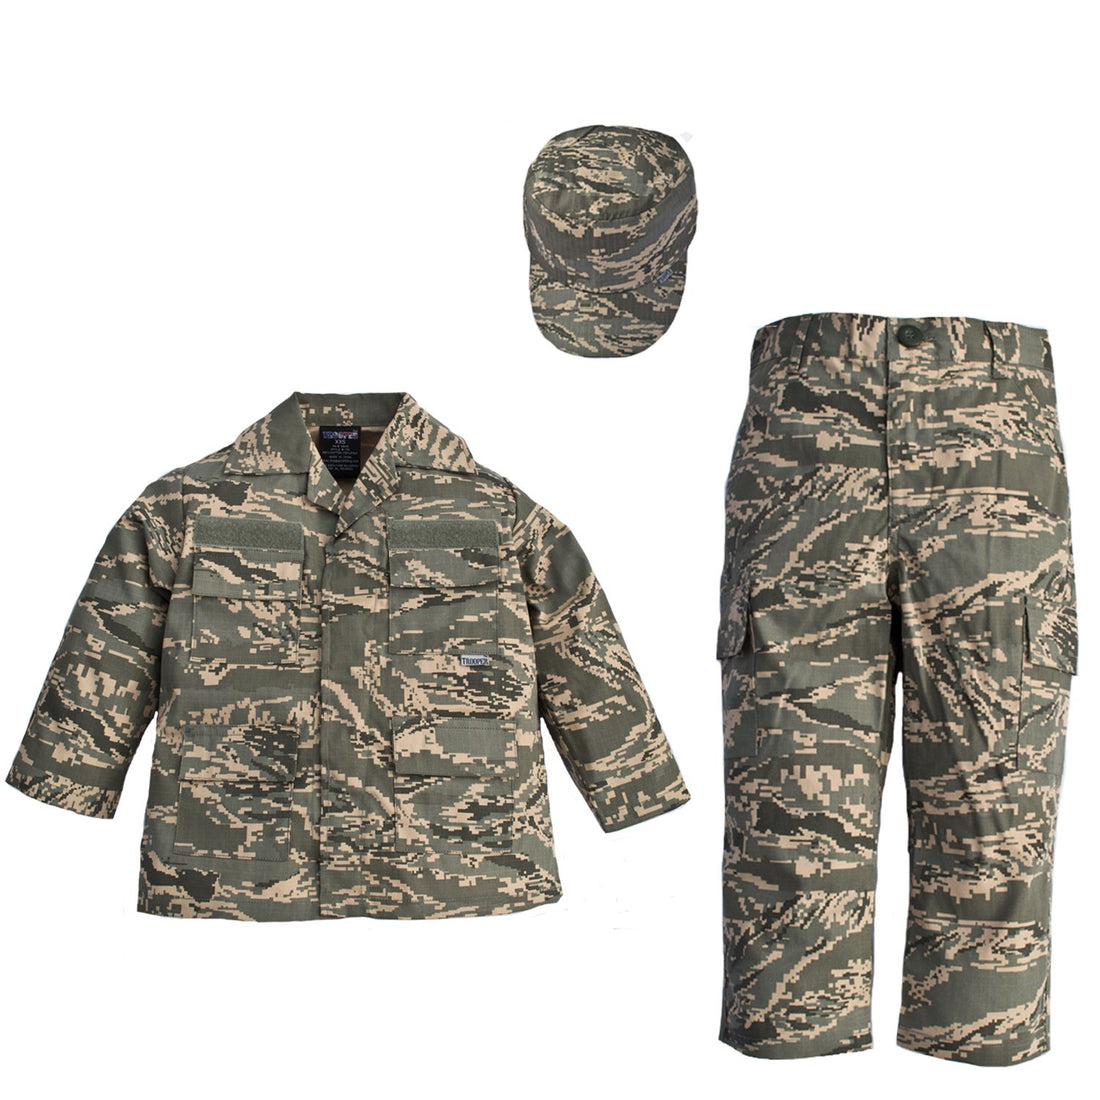 Trendy Apparel Shop Kid's US Soldier Airman ABU Camo Uniform 3pc Set Costume Cap, Jacket, Pants